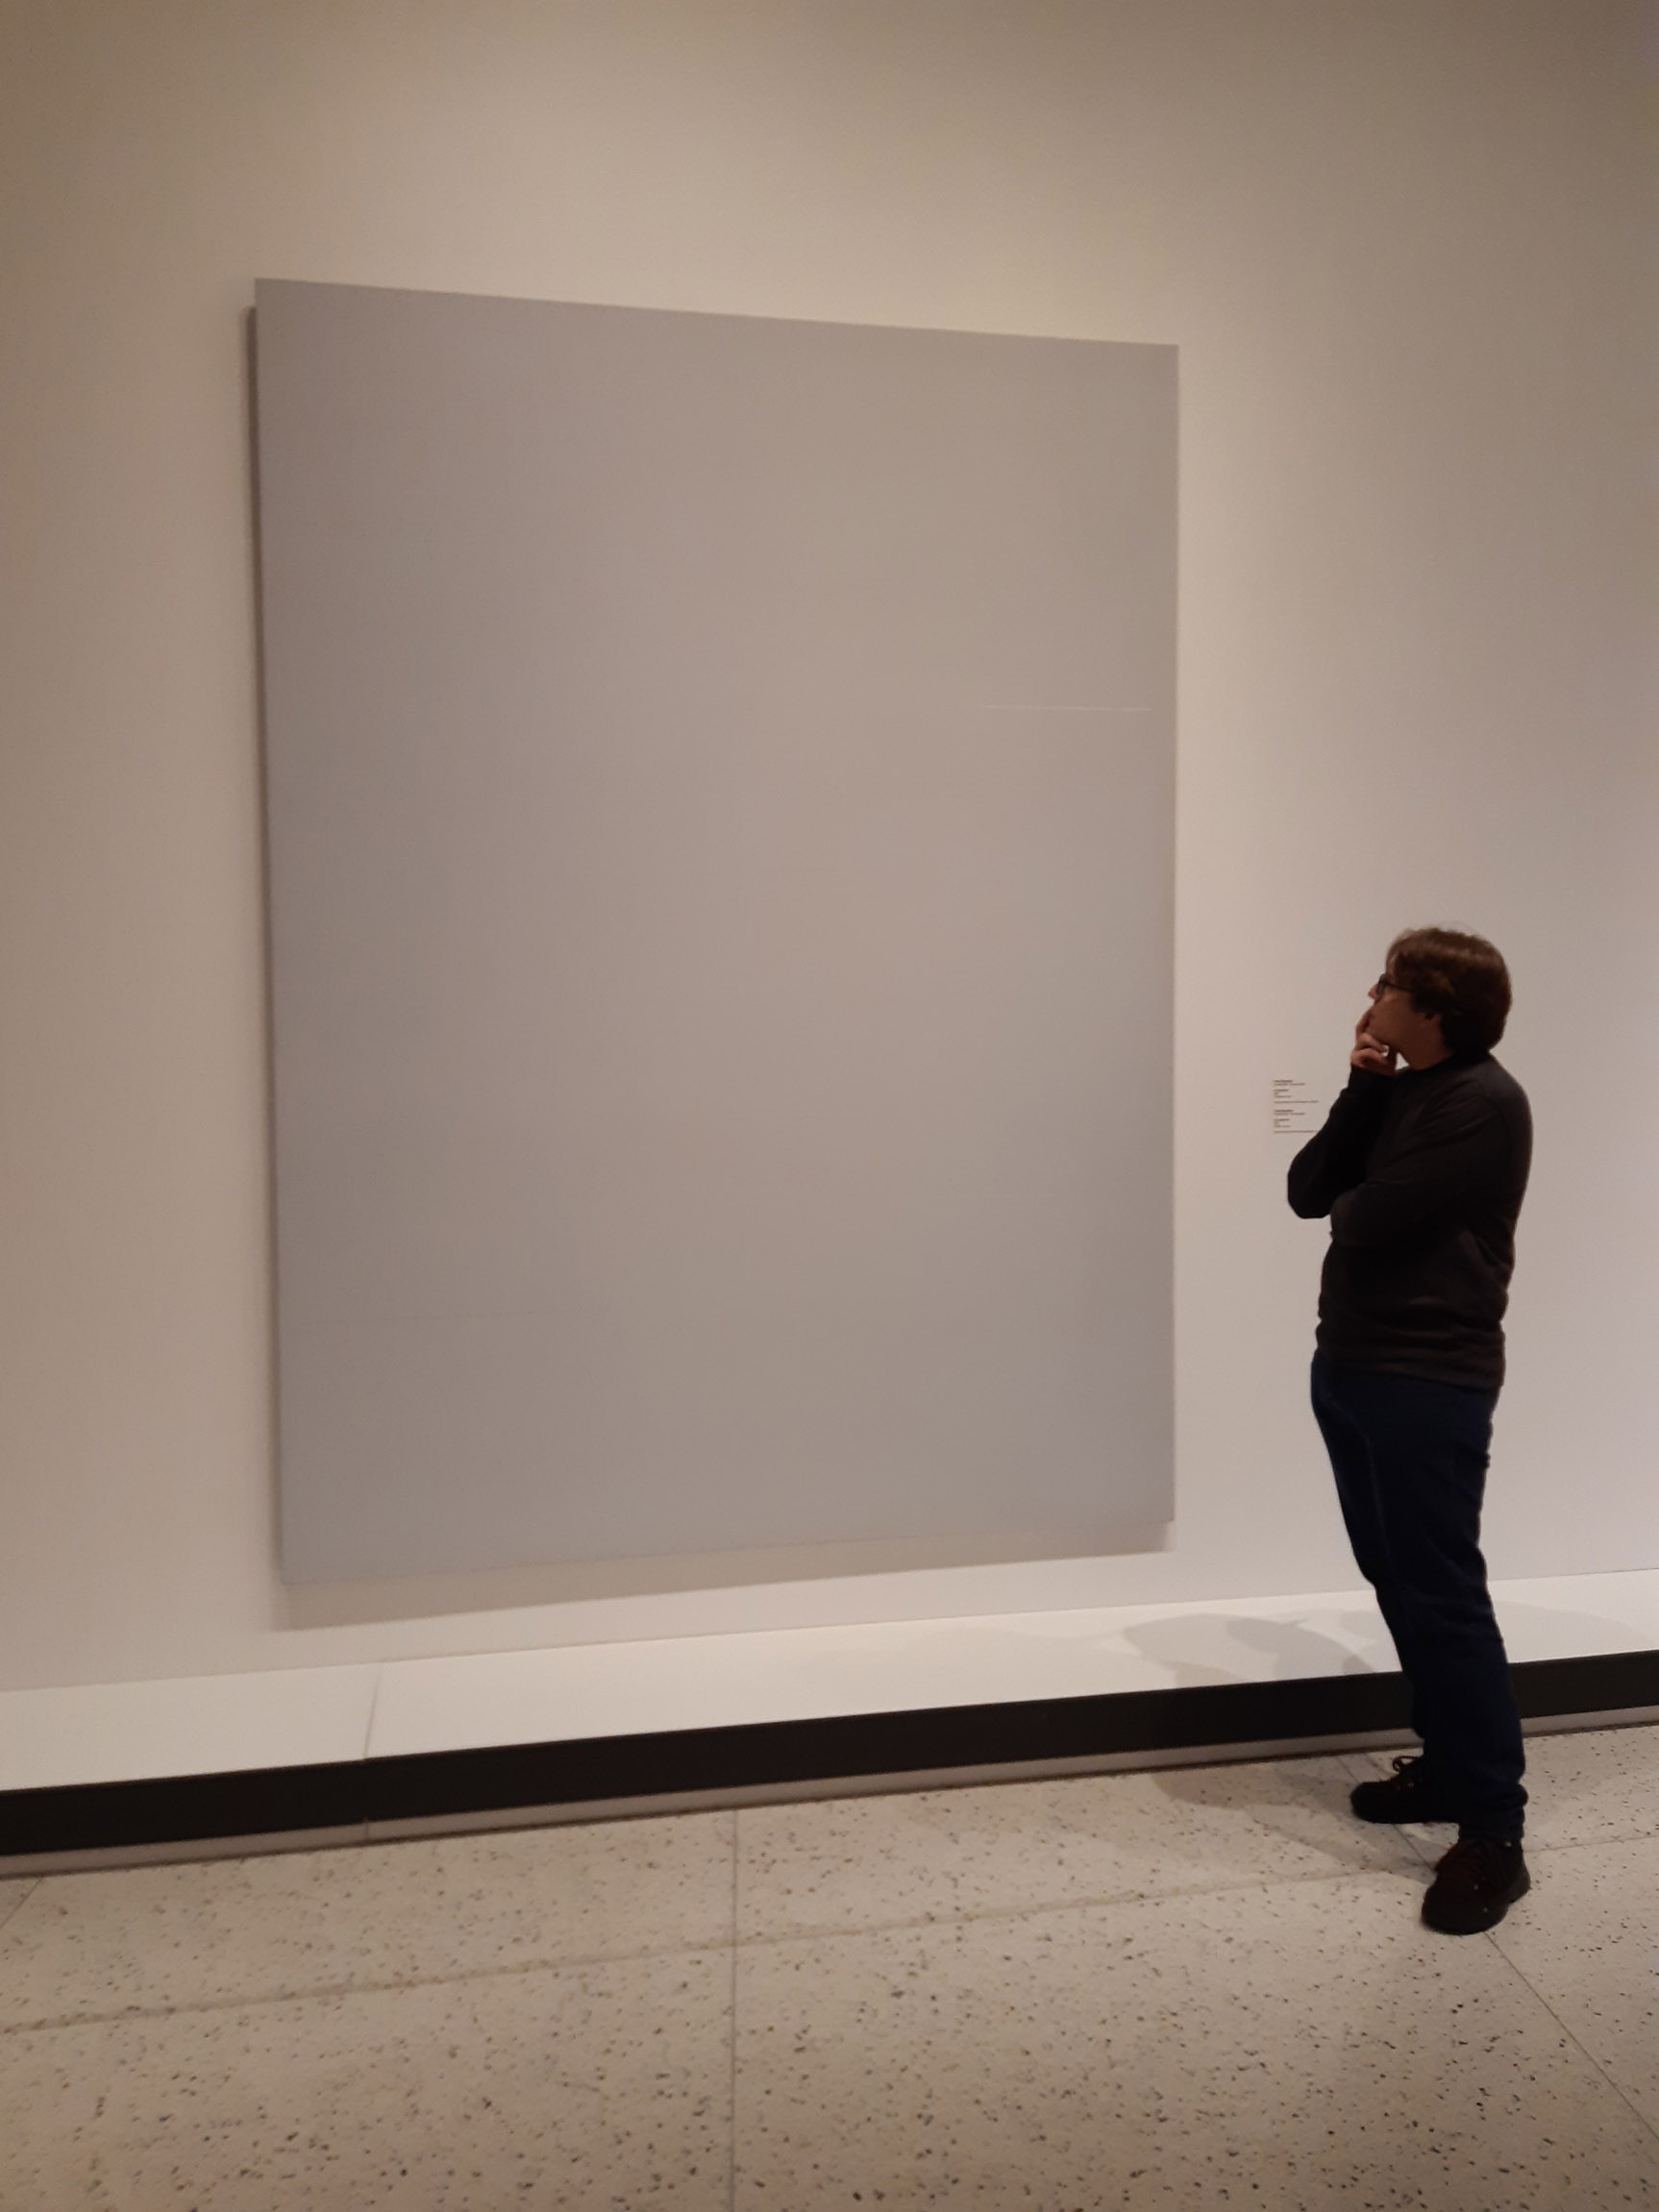 Eu, em pé, com pose pensativa, em frente a um quadro em branco